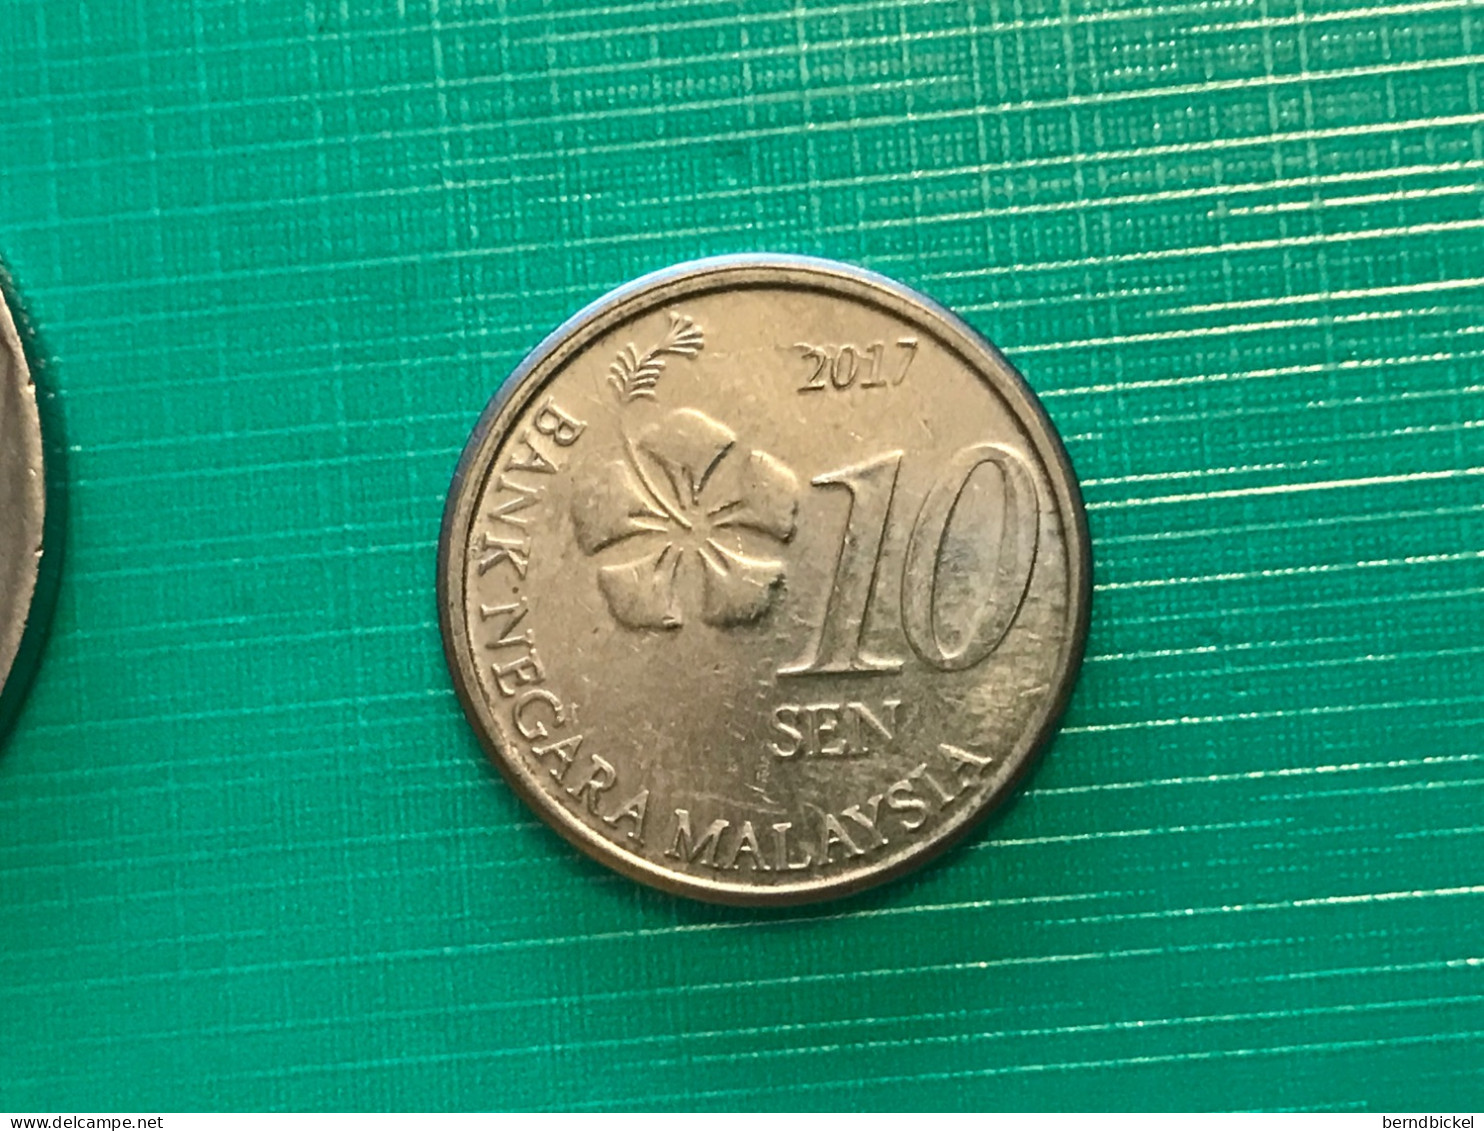 Münze Münzen Umlaufmünze Malaysia 10 Sen 2017 - Malaysia